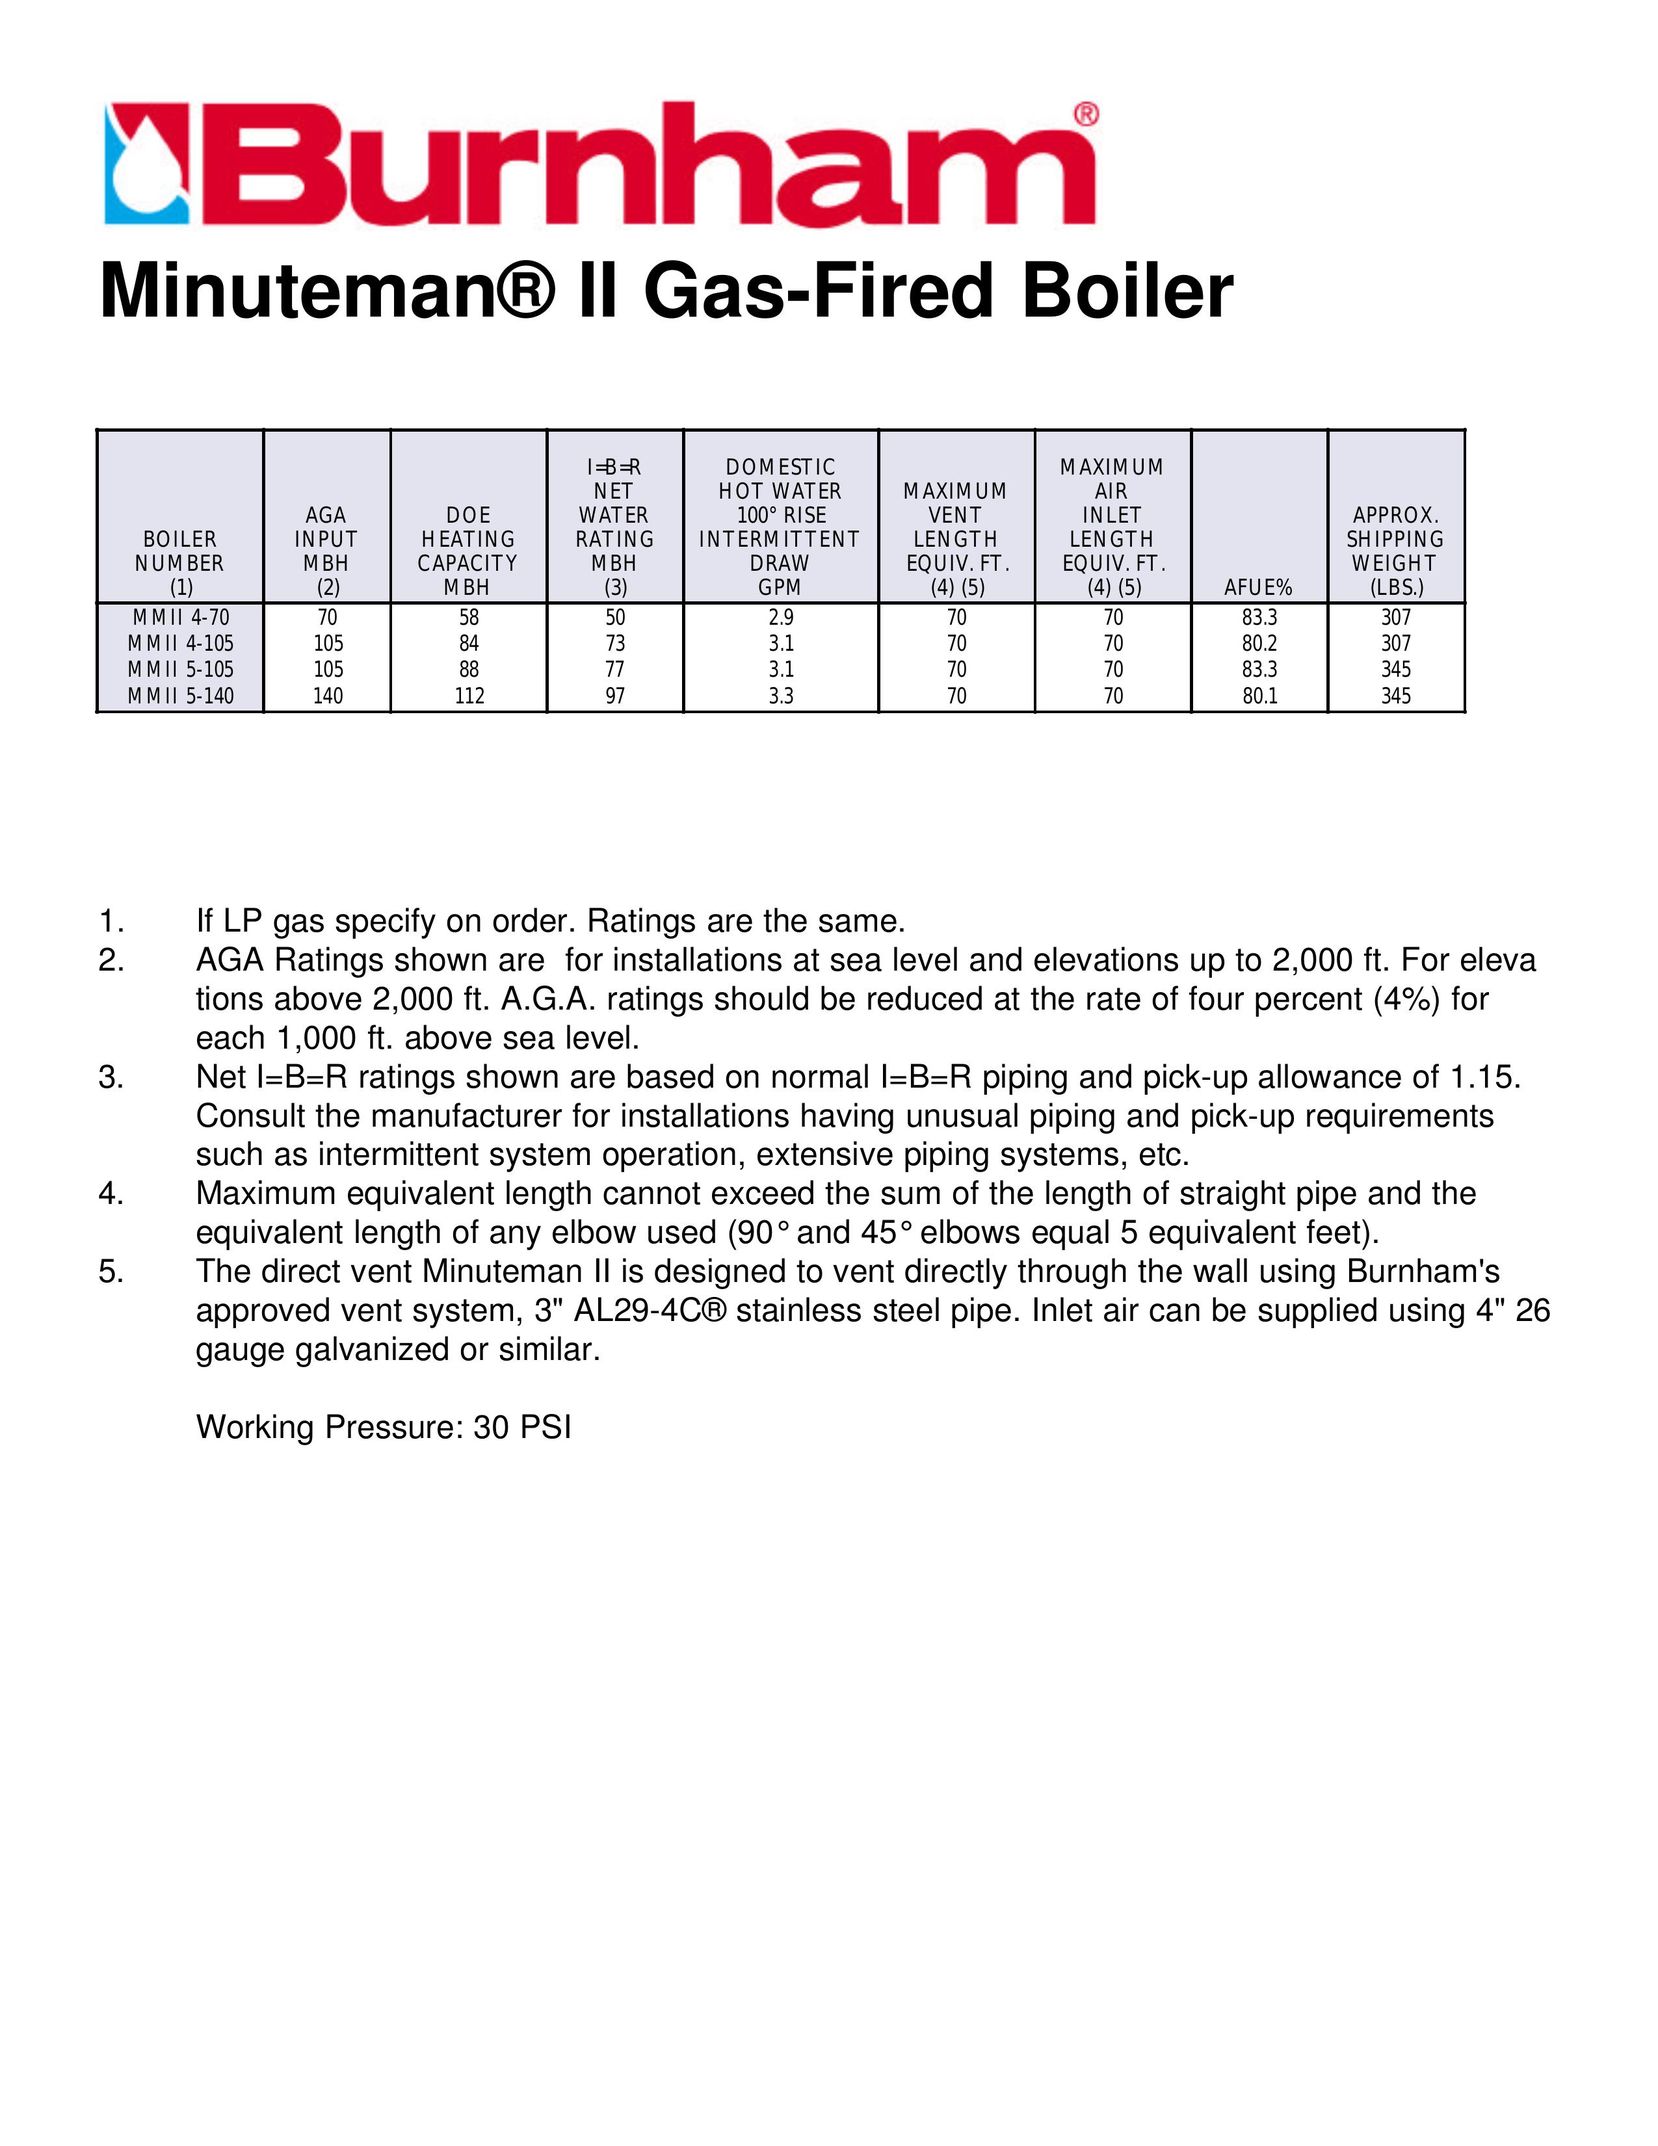 Burnham Minuteman II Boiler User Manual